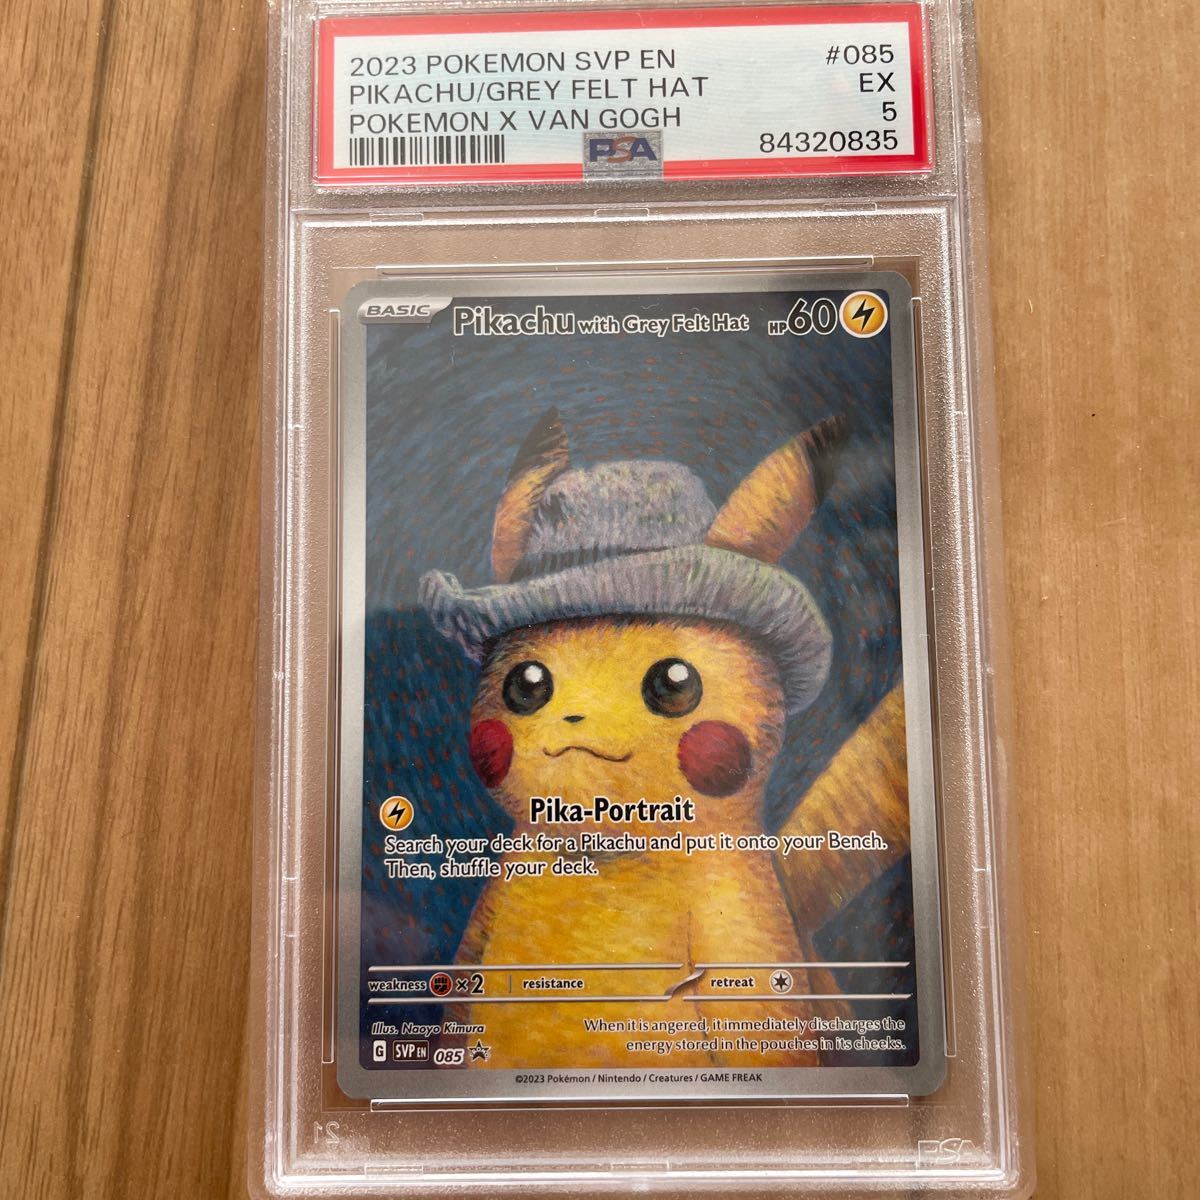 ゴッホピカチュウ プロモ/Pikachu with Grey Felt hat （085/SVPEN 